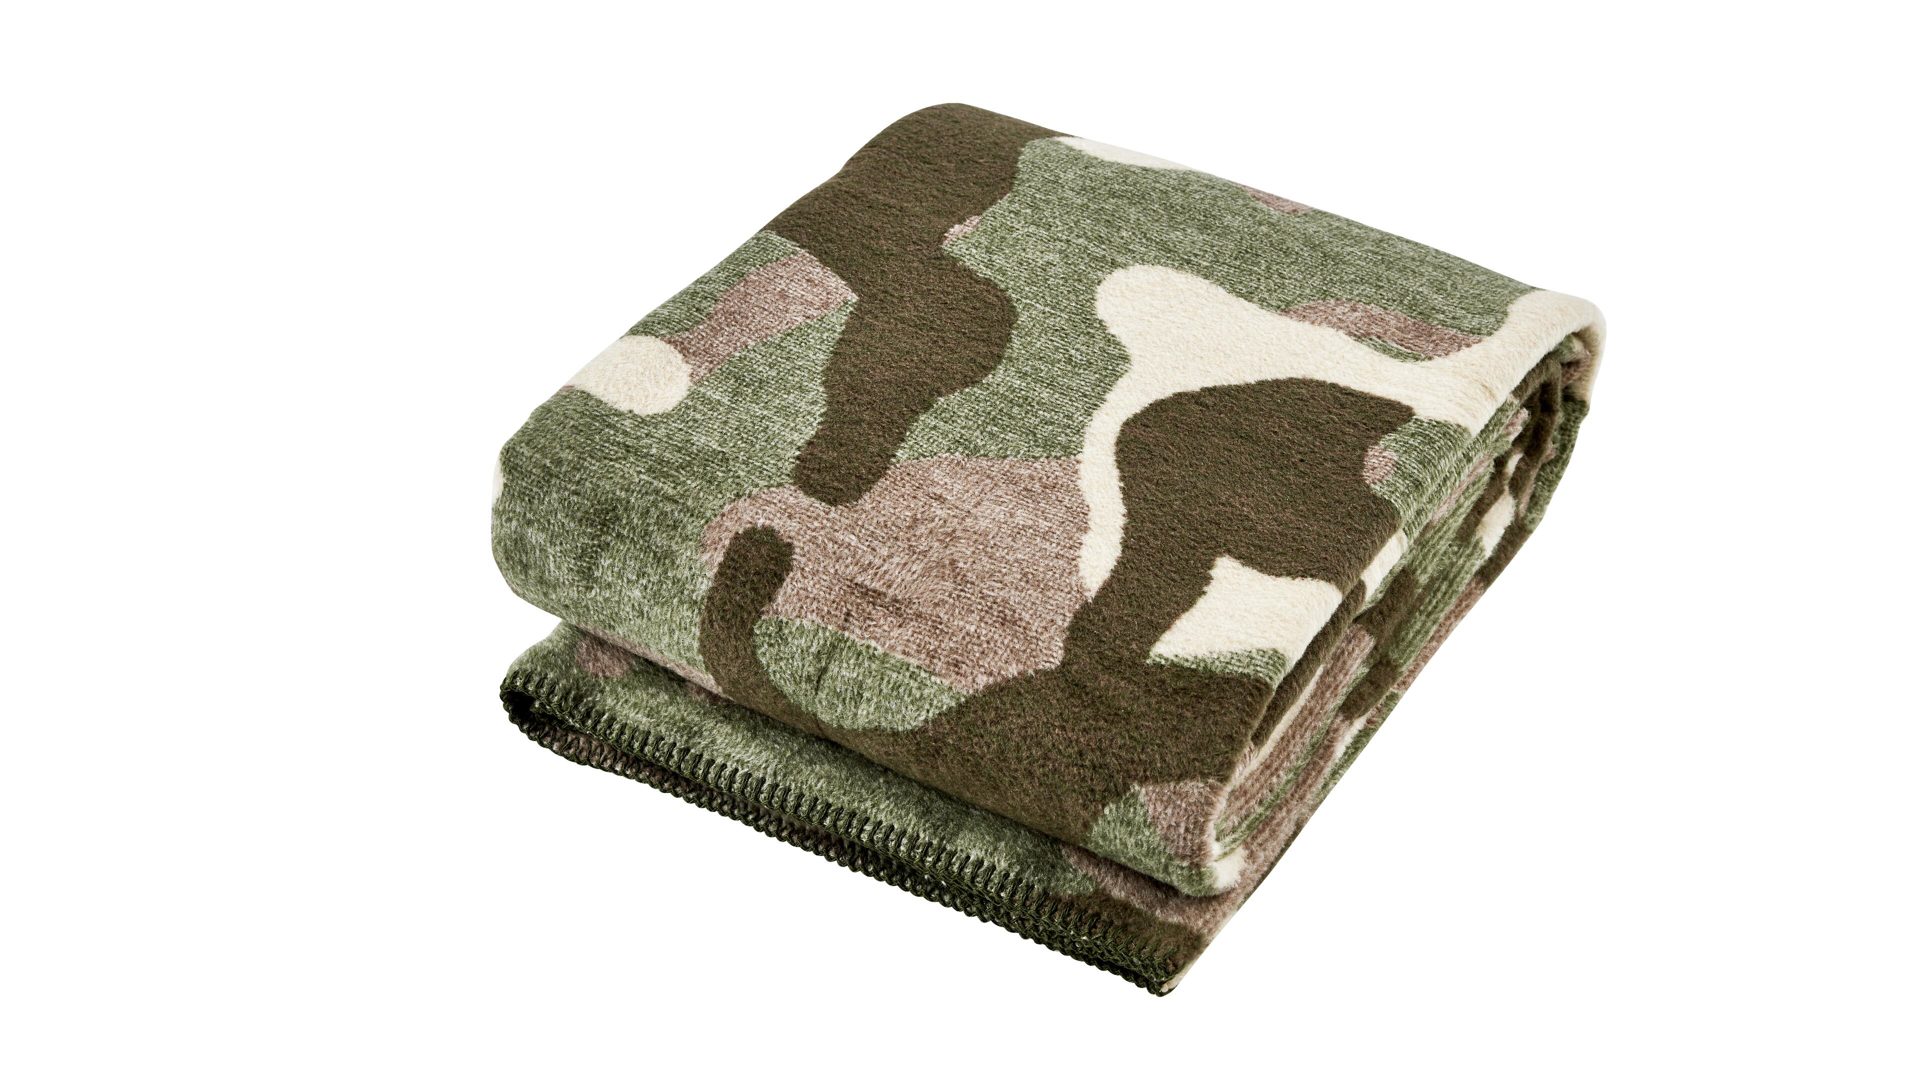 Wohndecke Done® by karabel home company aus Stoff in Braun DONE® Wohndecke Blanket Camouflage braunes Camouflagemuster – ca. 150 x 200 cm